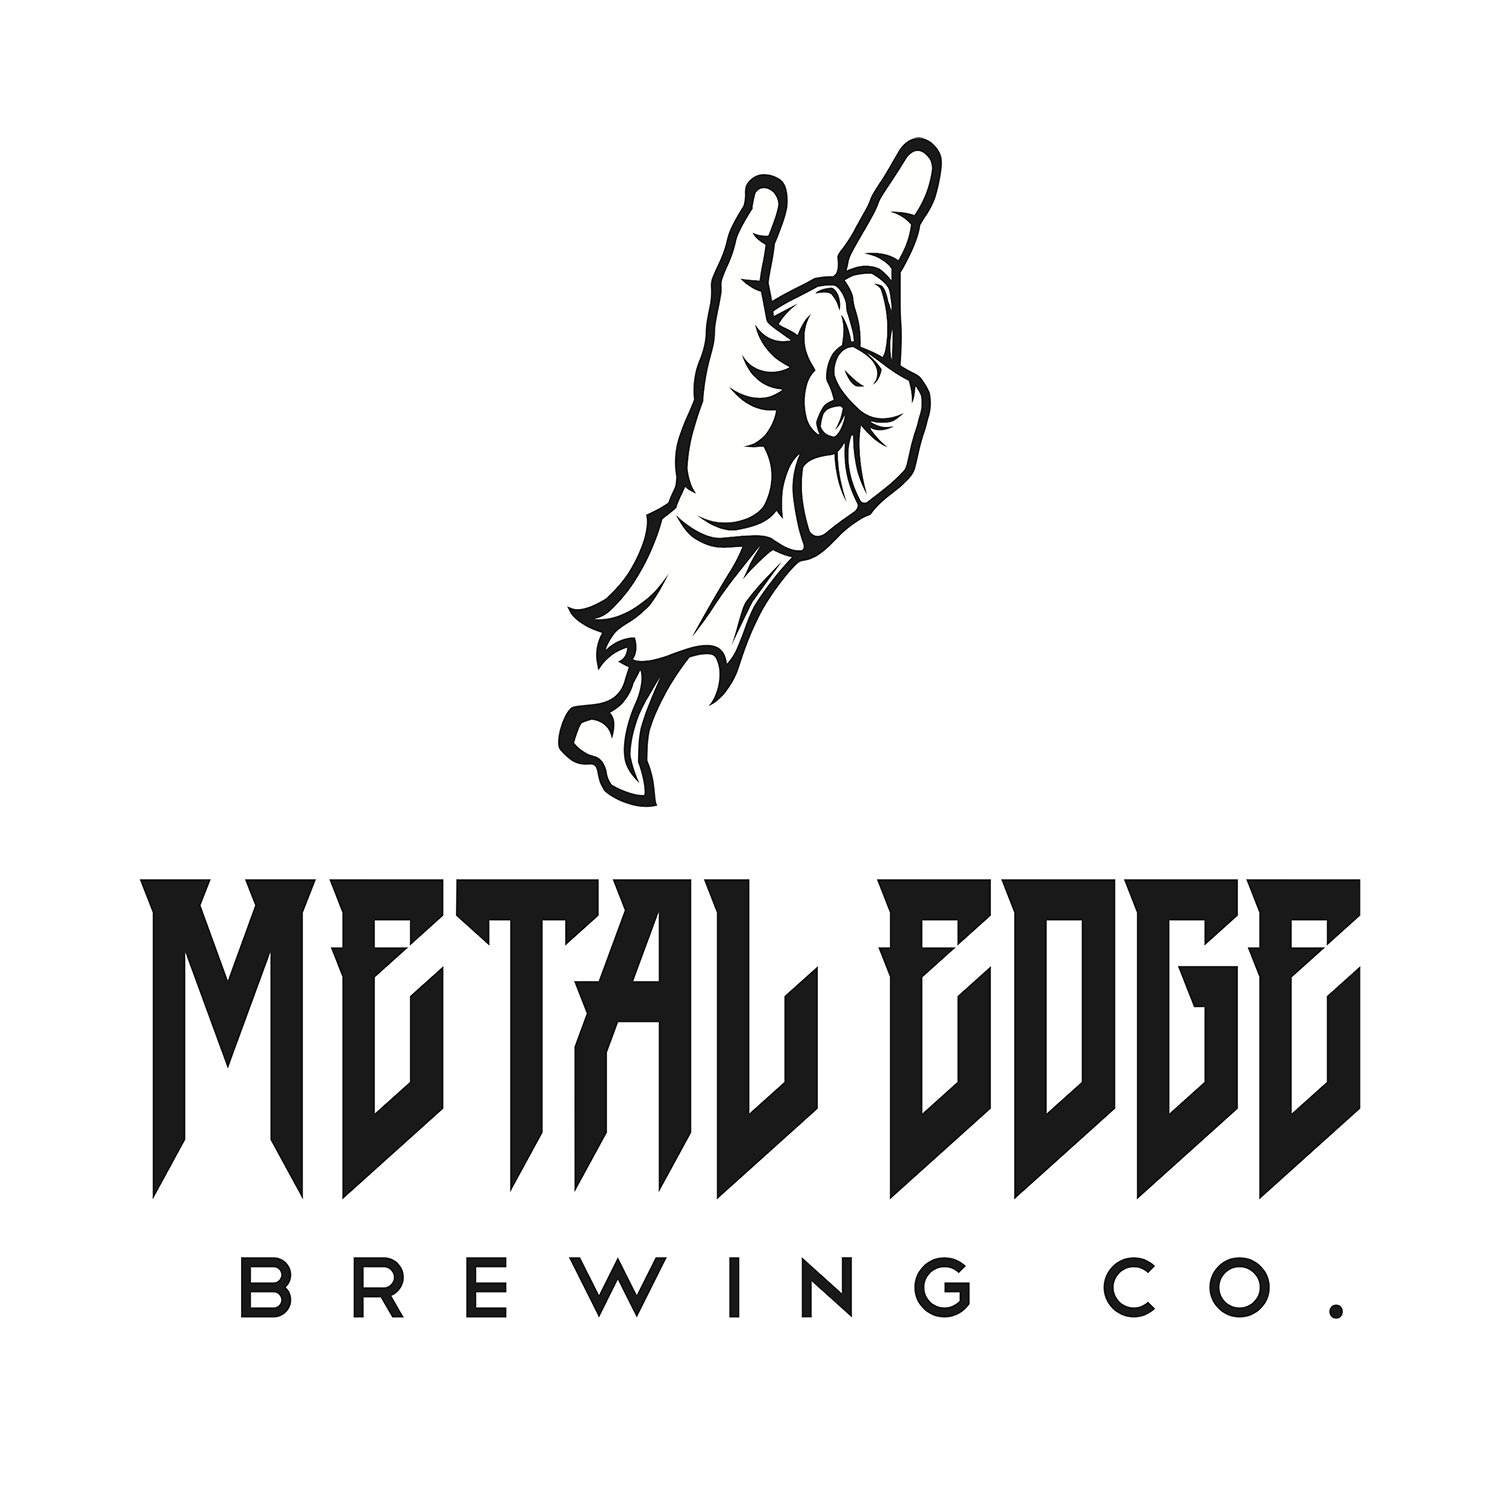 metal edge brewing logo.png